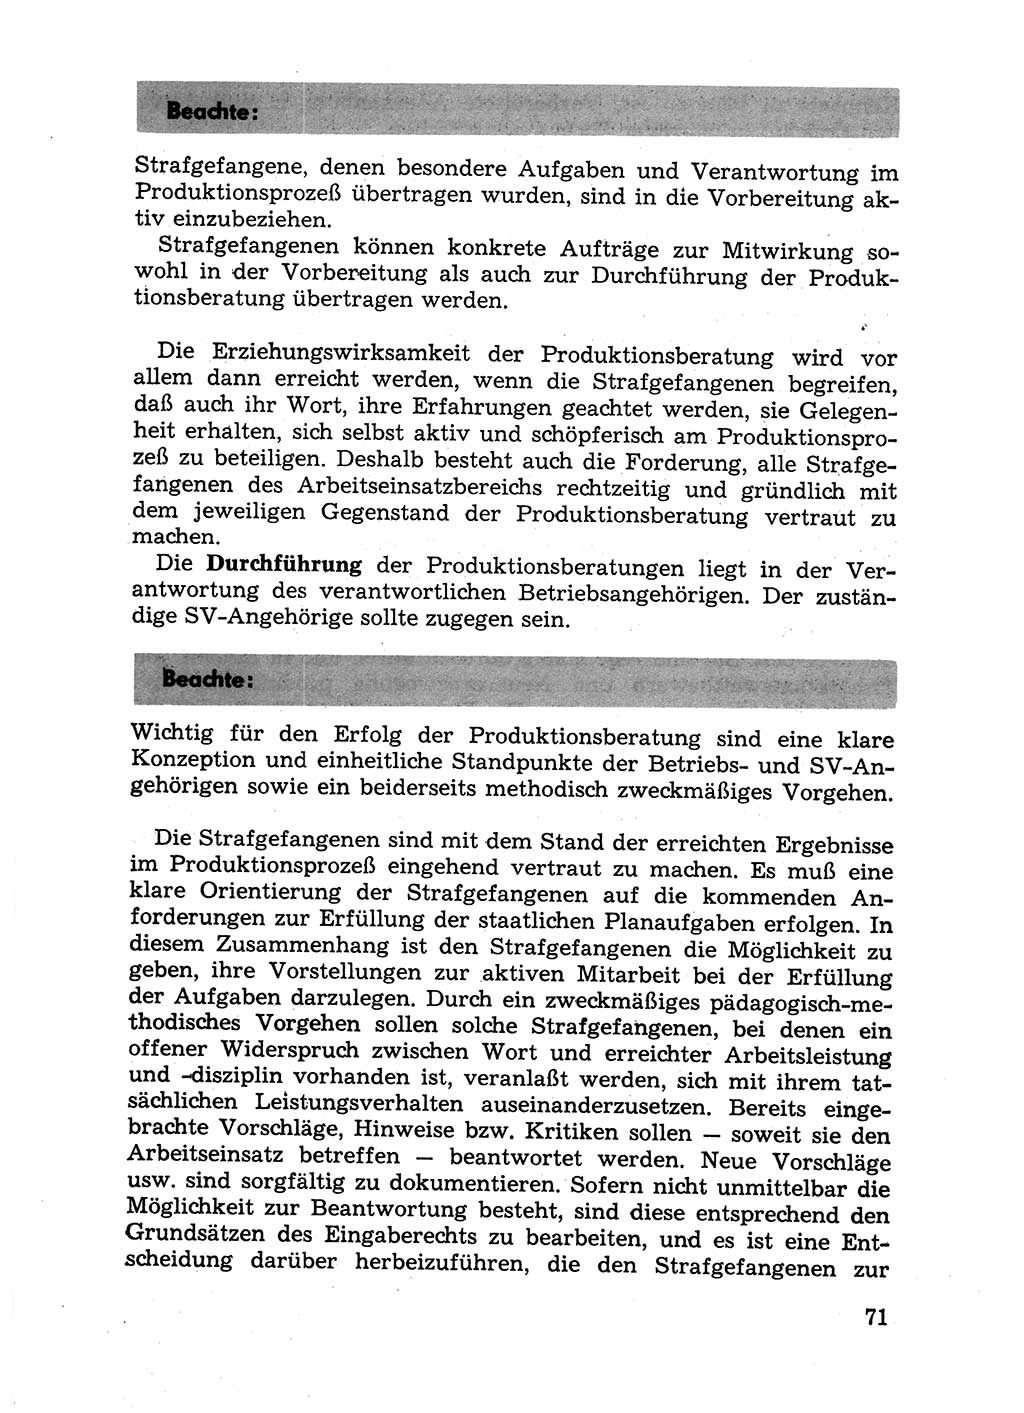 Handbuch für Betriebsangehörige, Abteilung Strafvollzug (SV) [Ministerium des Innern (MdI) Deutsche Demokratische Republik (DDR)] 1981, Seite 71 (Hb. BA Abt. SV MdI DDR 1981, S. 71)